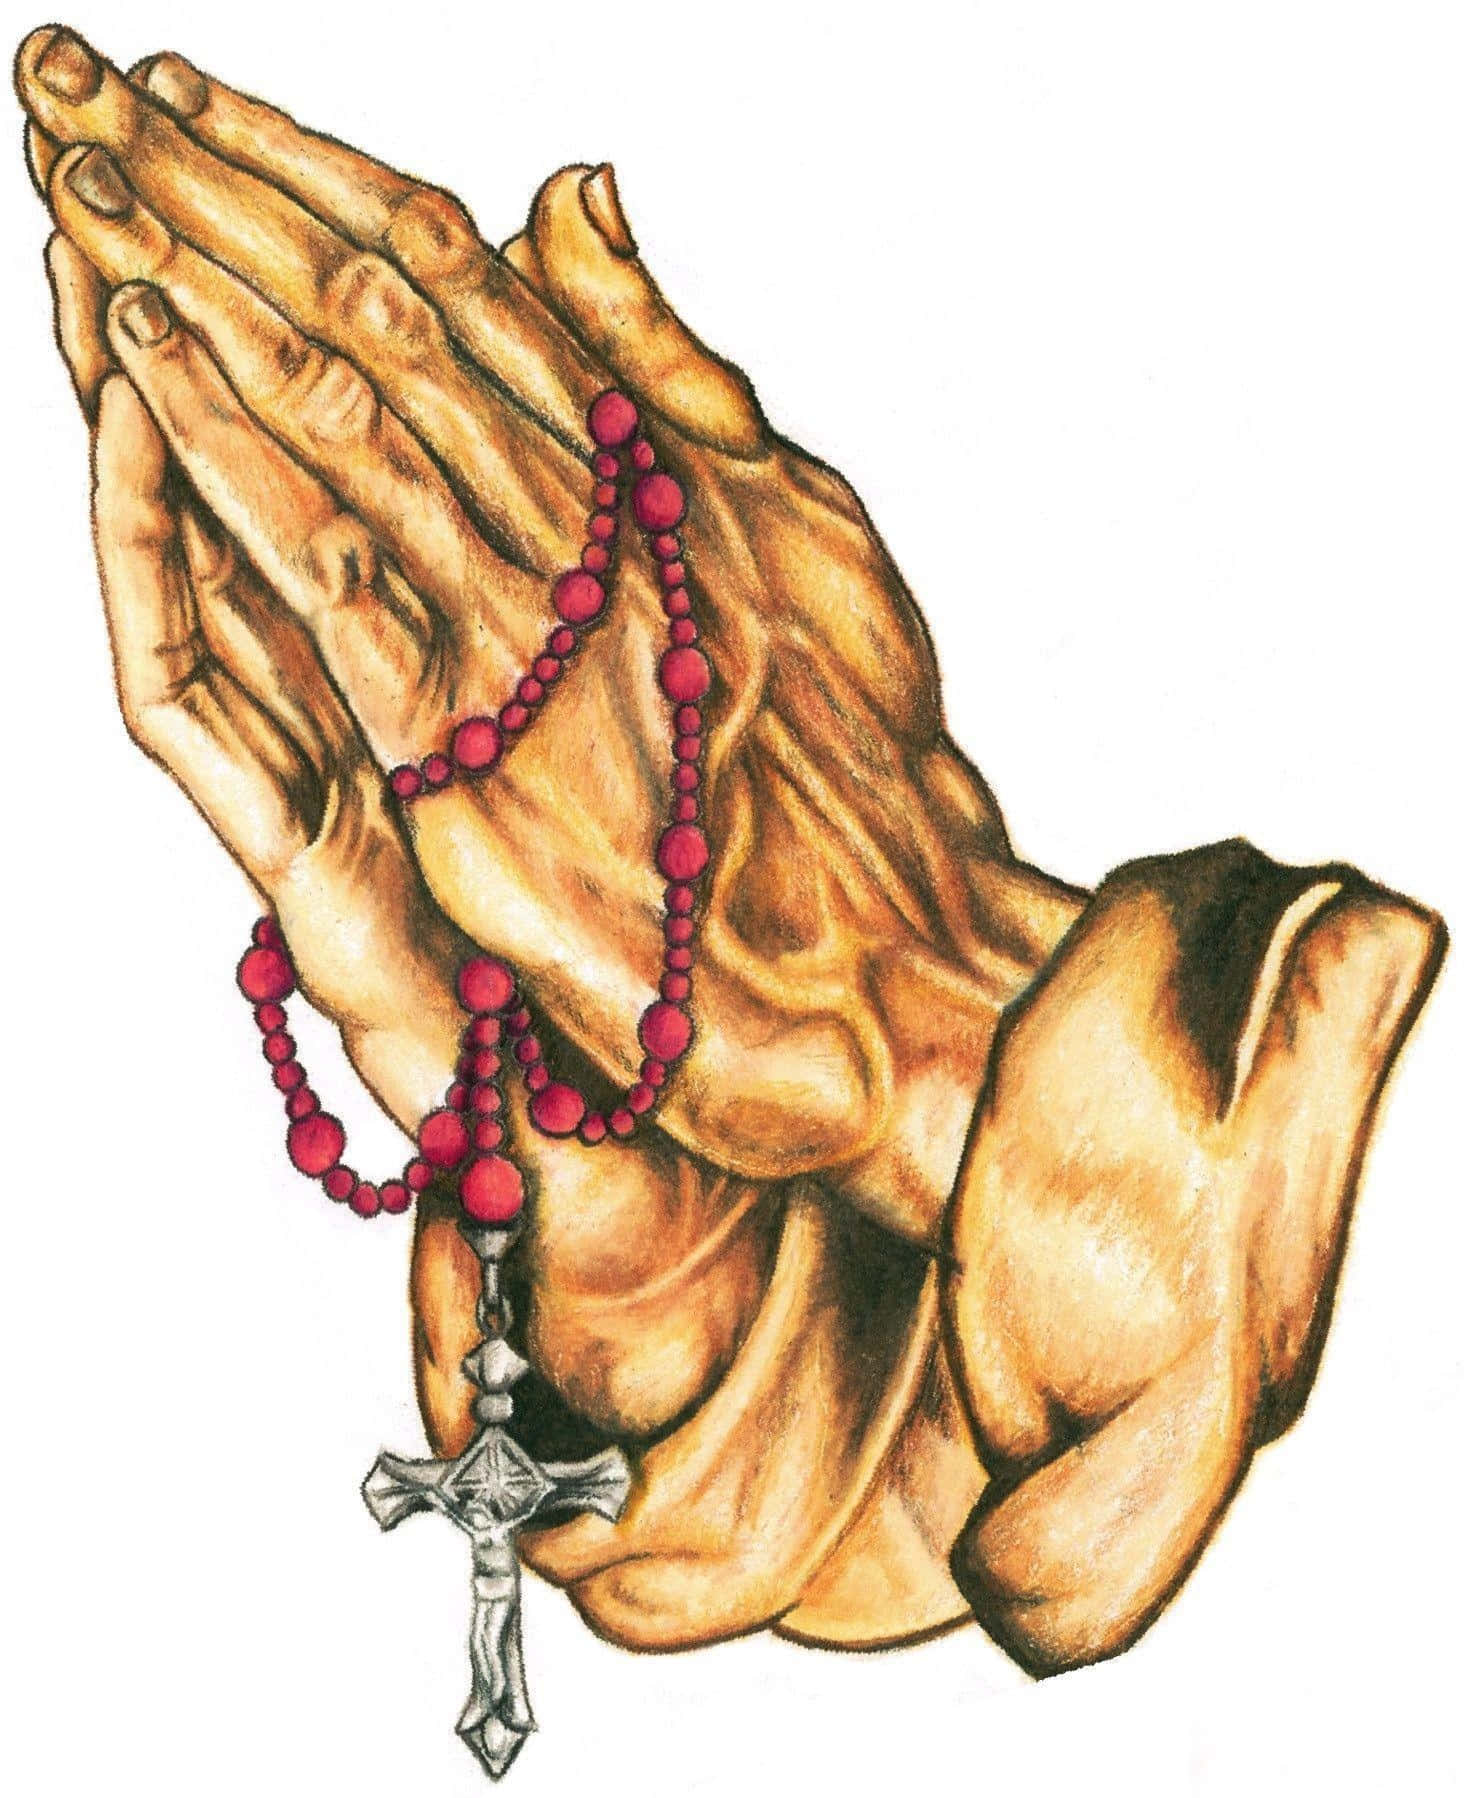 Praying Hands 1464 X 1798 Wallpaper